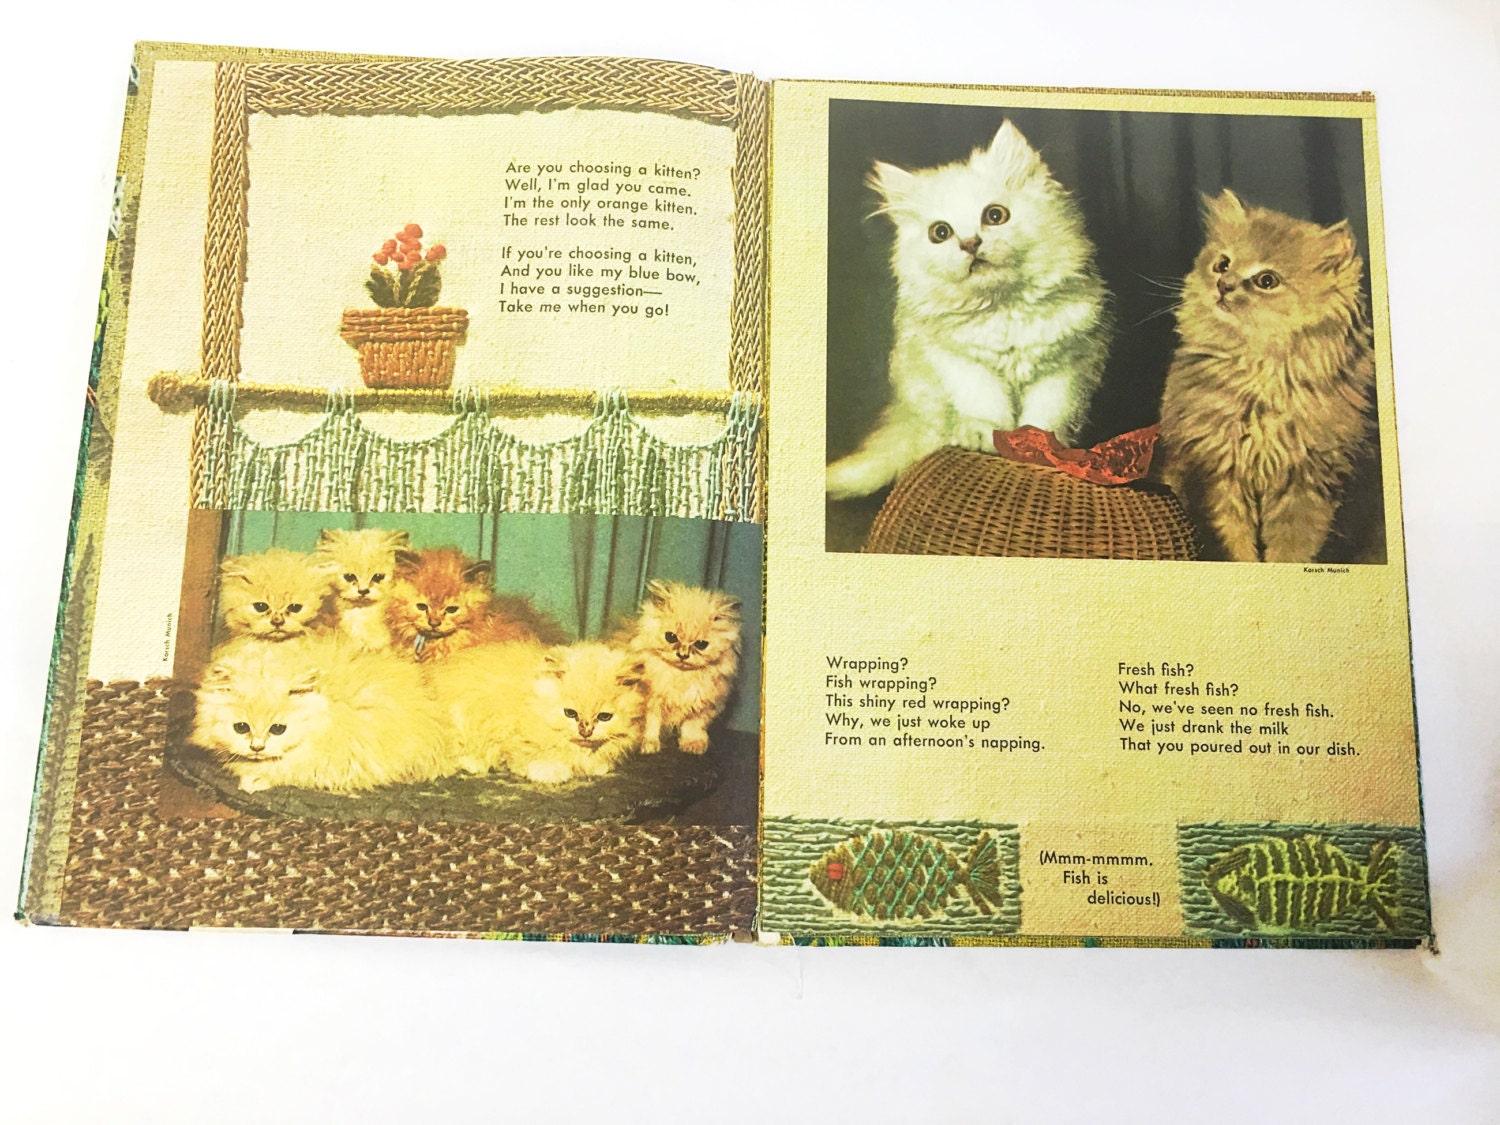 Tell Me, Cat. Big Little Golden Book by Ellen Fisher. Giant Tell-A-Tale Book. Little Golden Books. LGB. A Golden Book